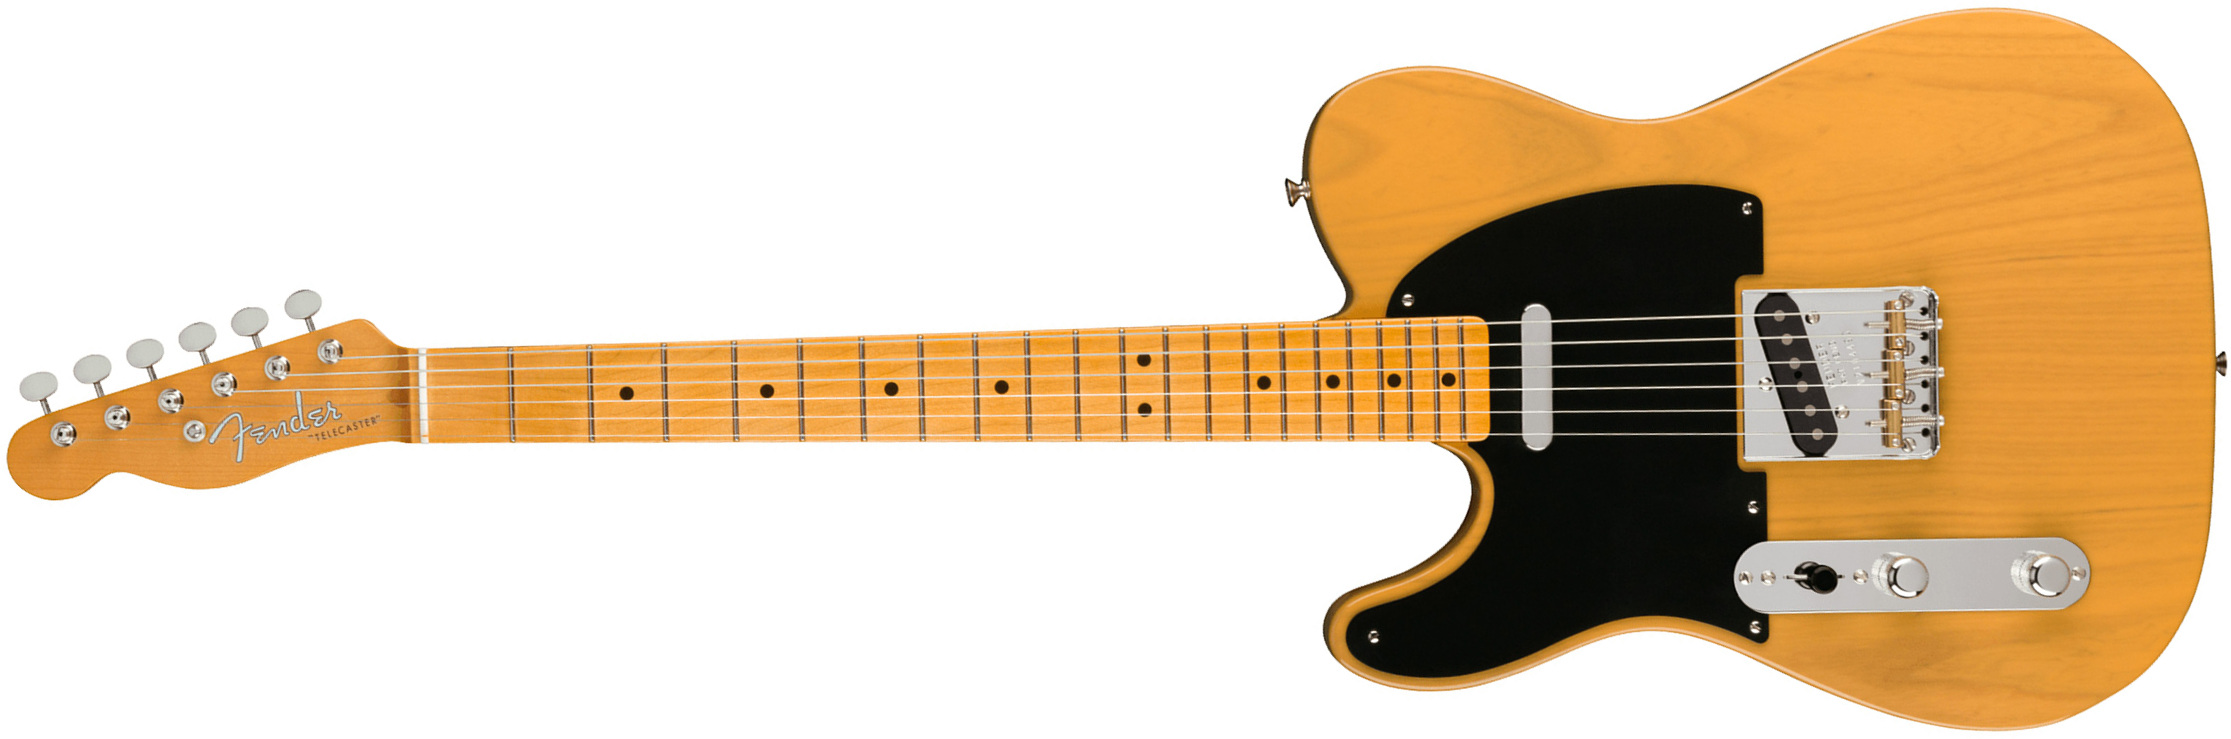 Fender Tele 1951 American Vintage Ii Lh Gaucher 2s Ht Mn - Butterscotch Blonde - Guitarra electrica para zurdos - Main picture